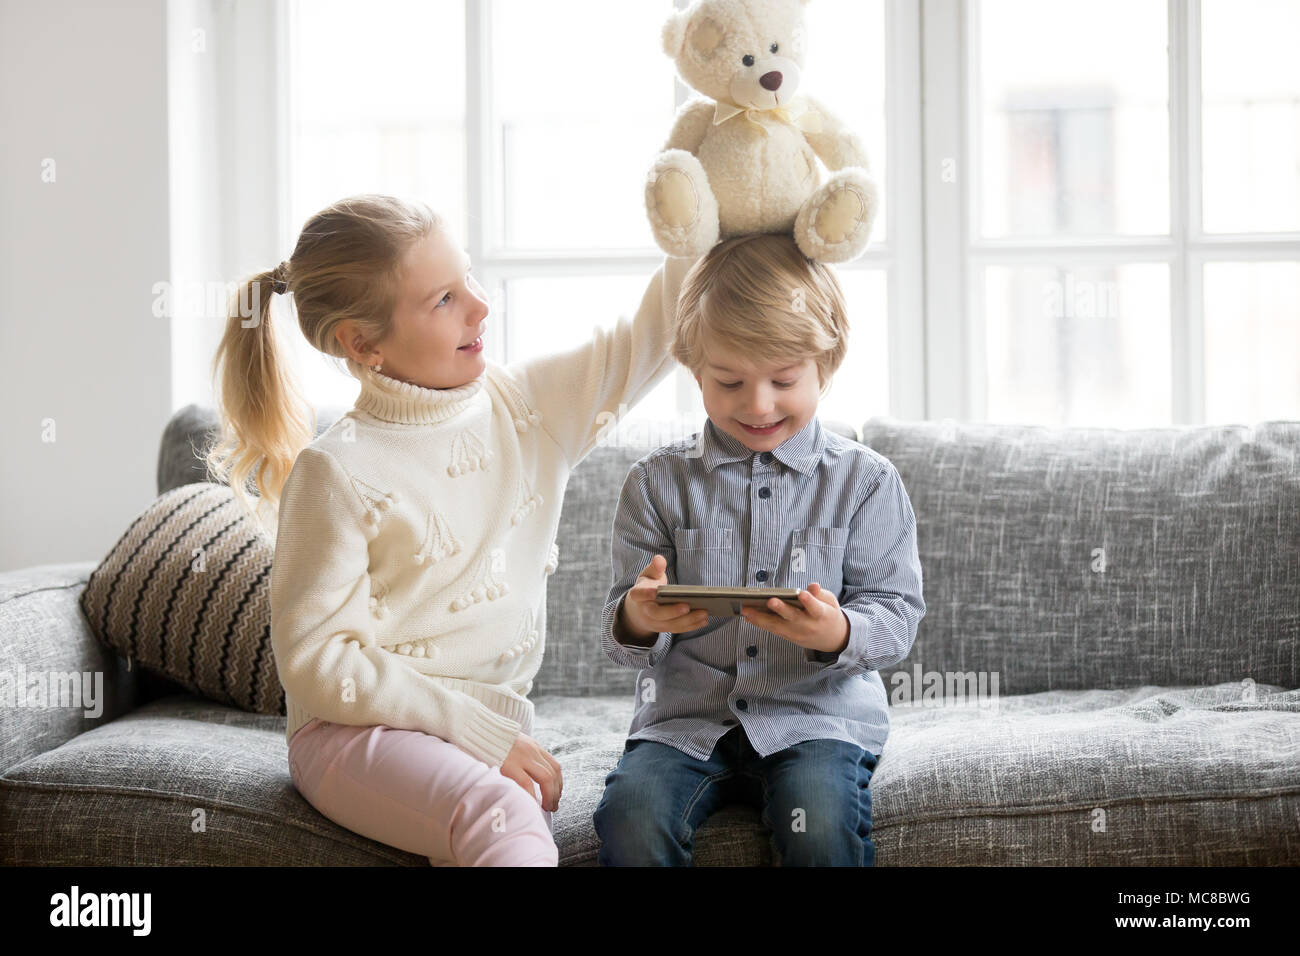 Happy Little Brother Holding digital Tablet während Schwester spielen mit Spielzeug Teddybären zu Hause, lächelnd Kinder Jungen und Mädchen gemeinsam Spaß in sittin Stockfoto